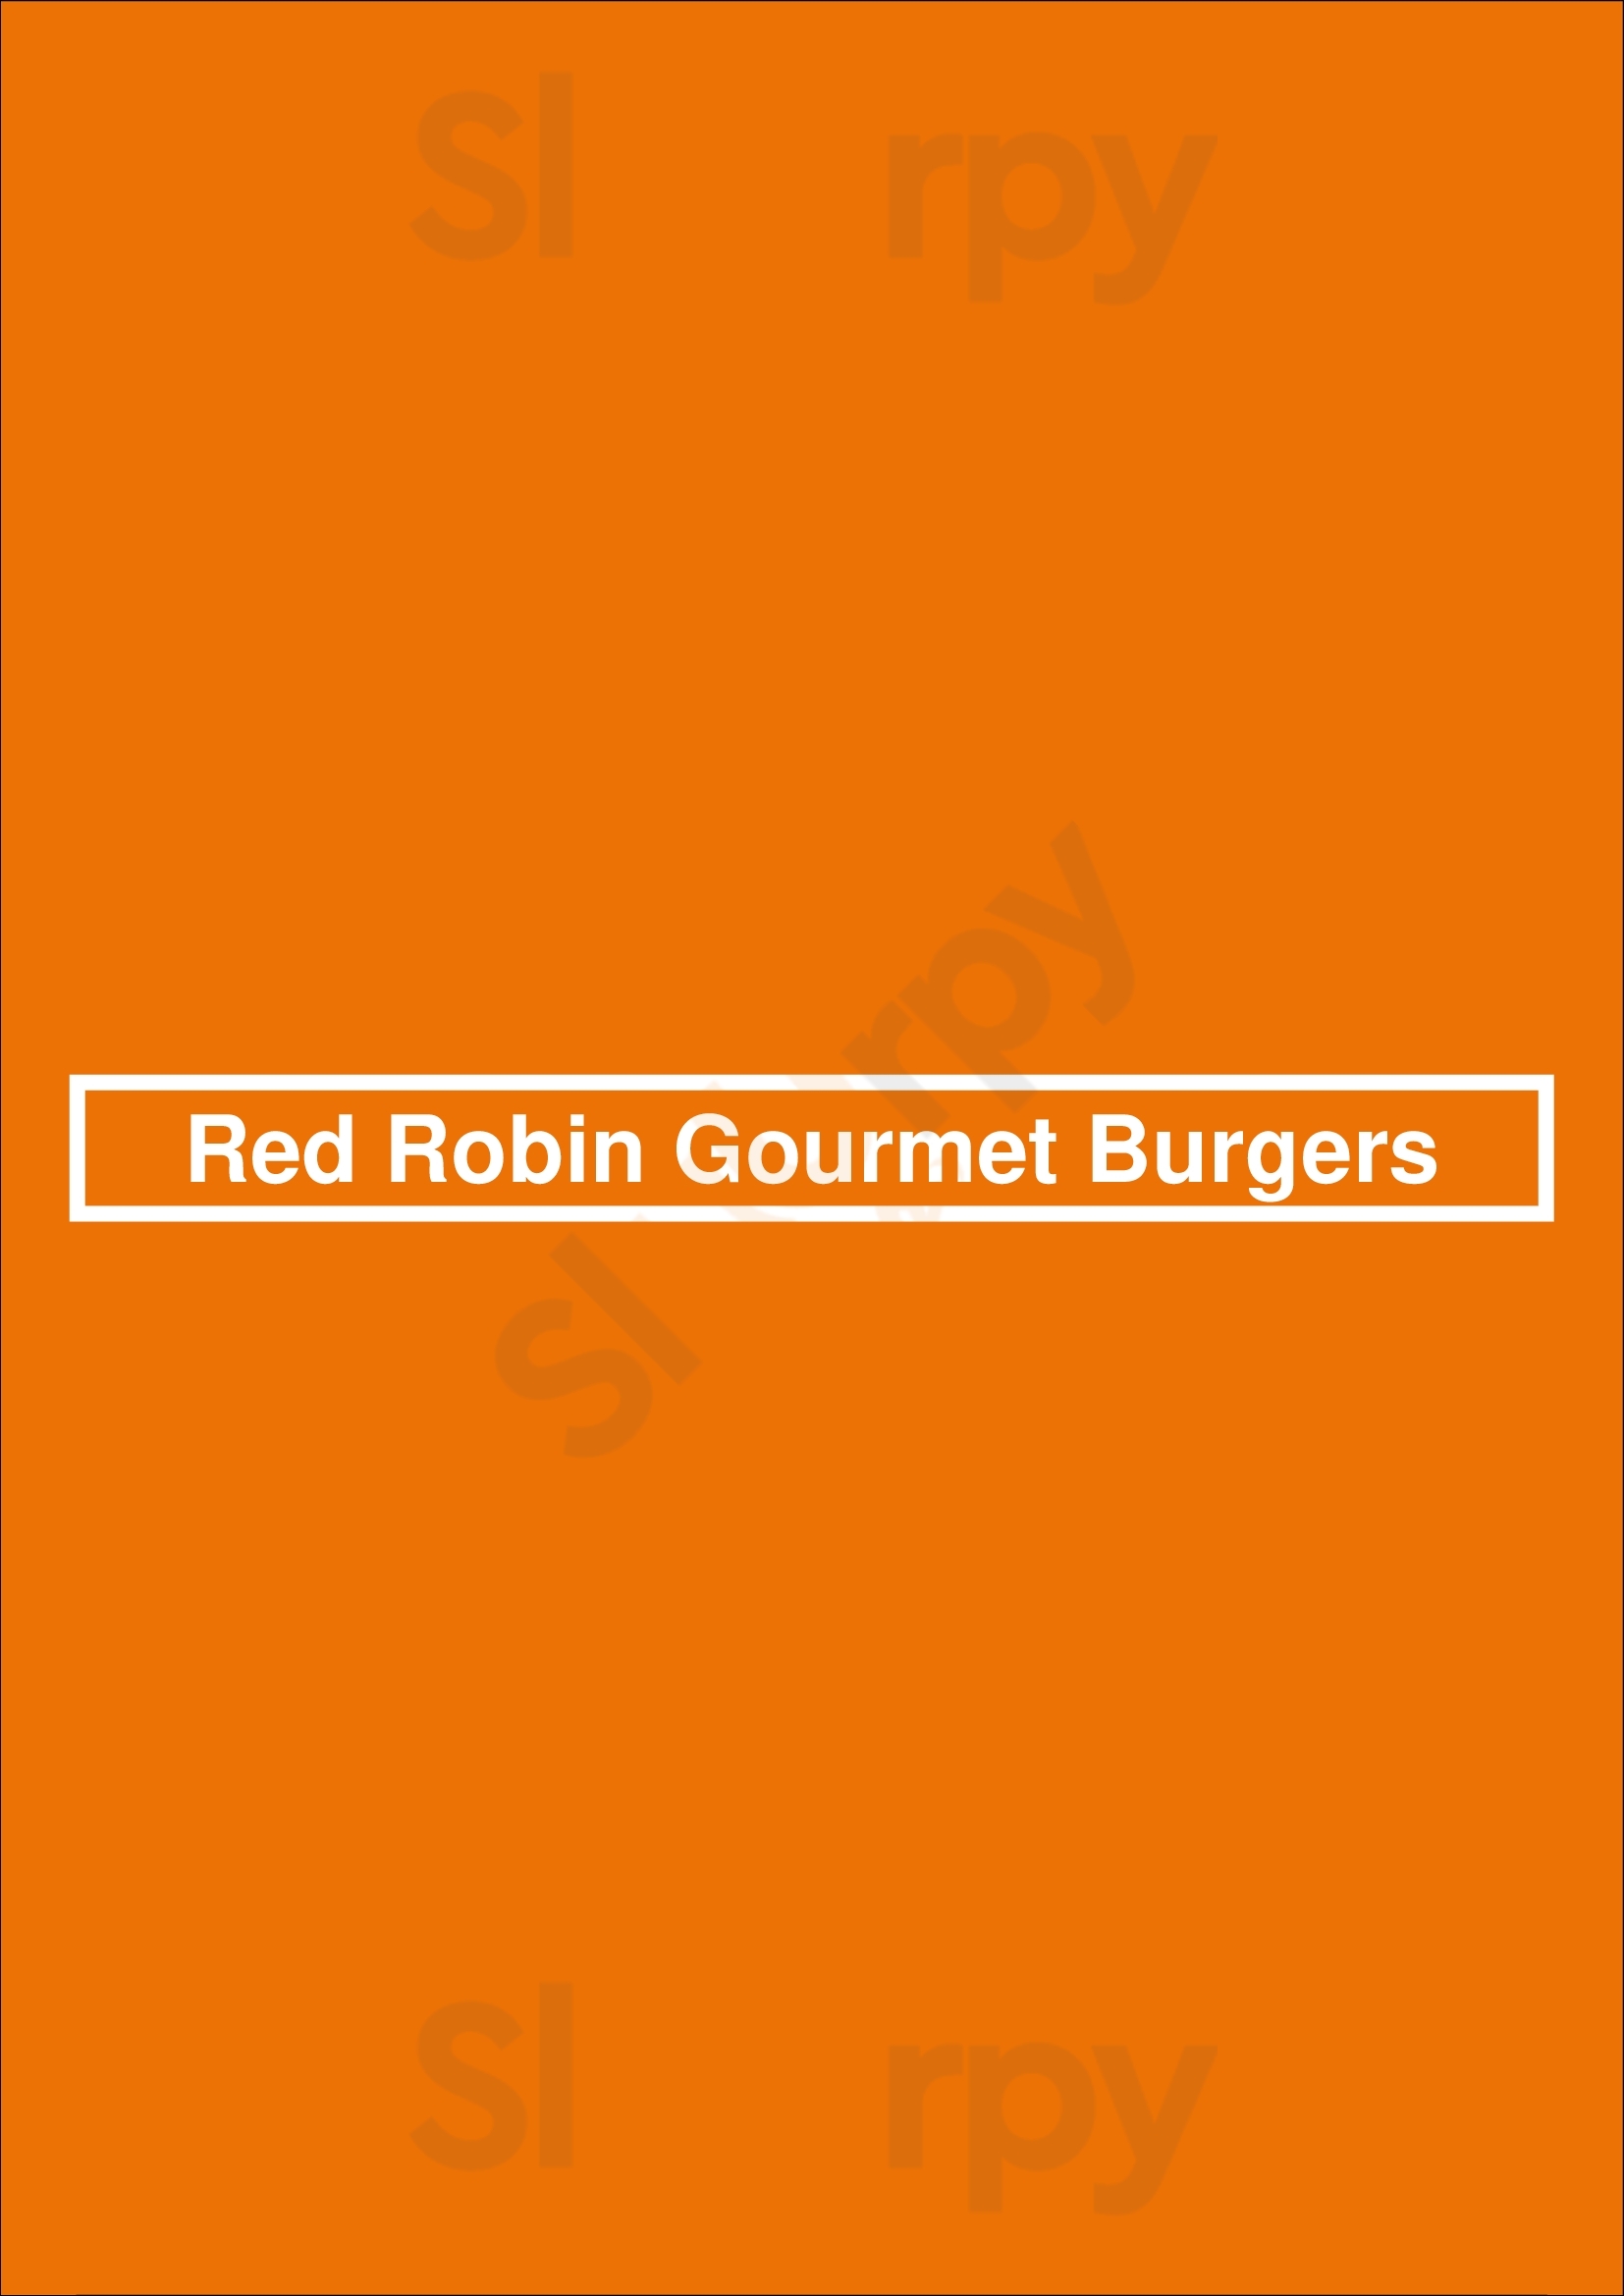 Red Robin Gourmet Burgers Lakewood Menu - 1